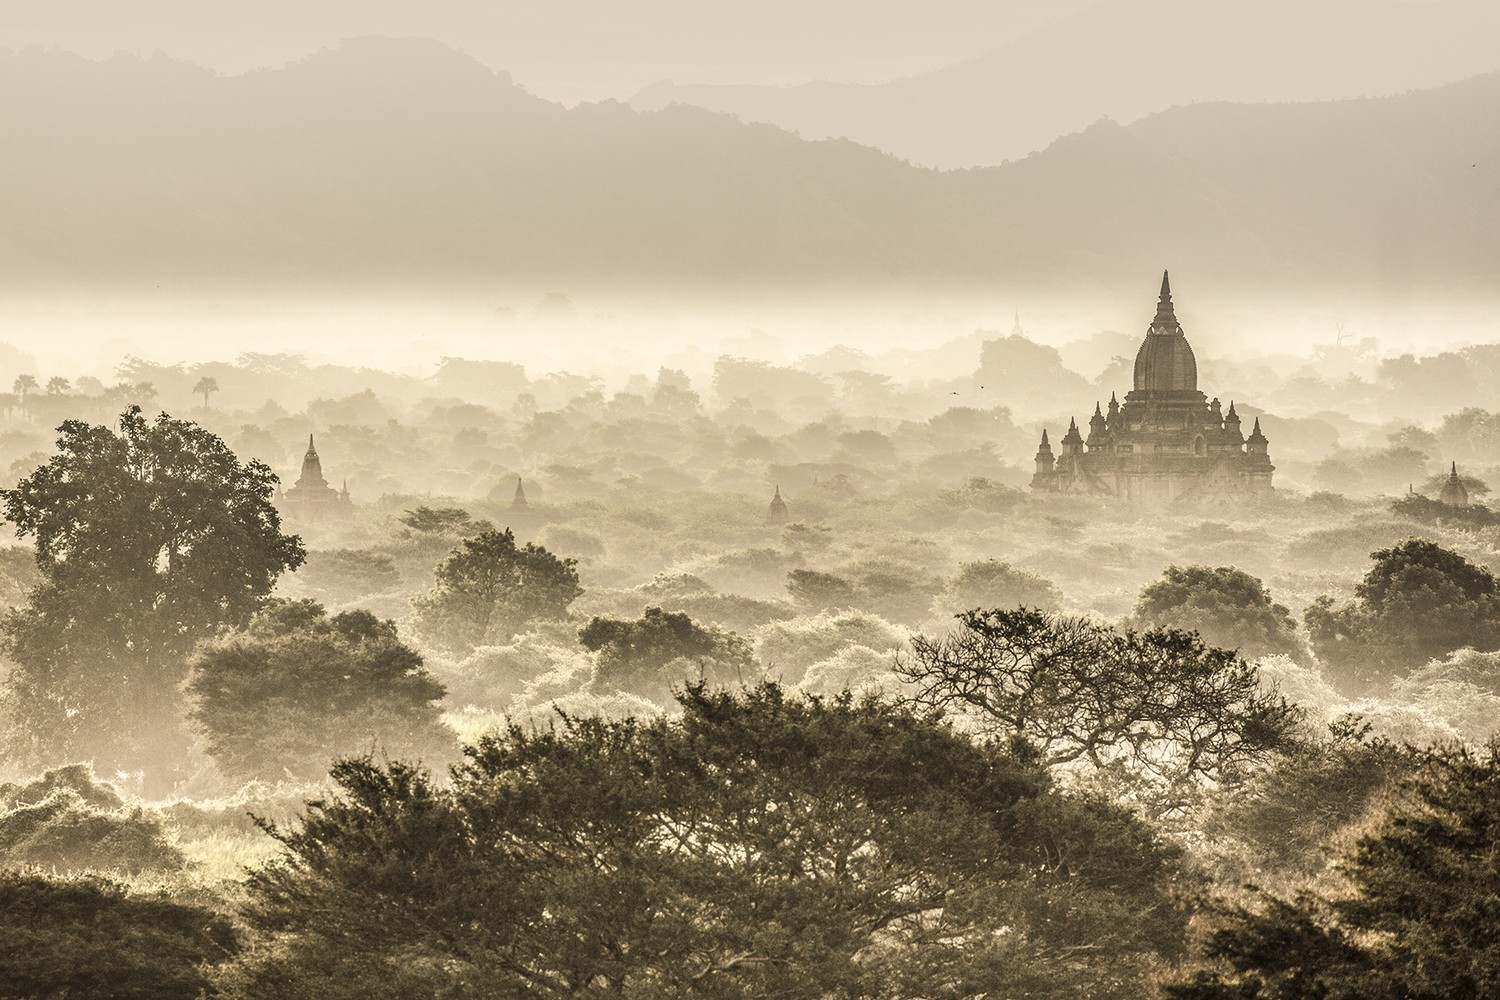 Dans la brume de Bagan - Myanmar 2017